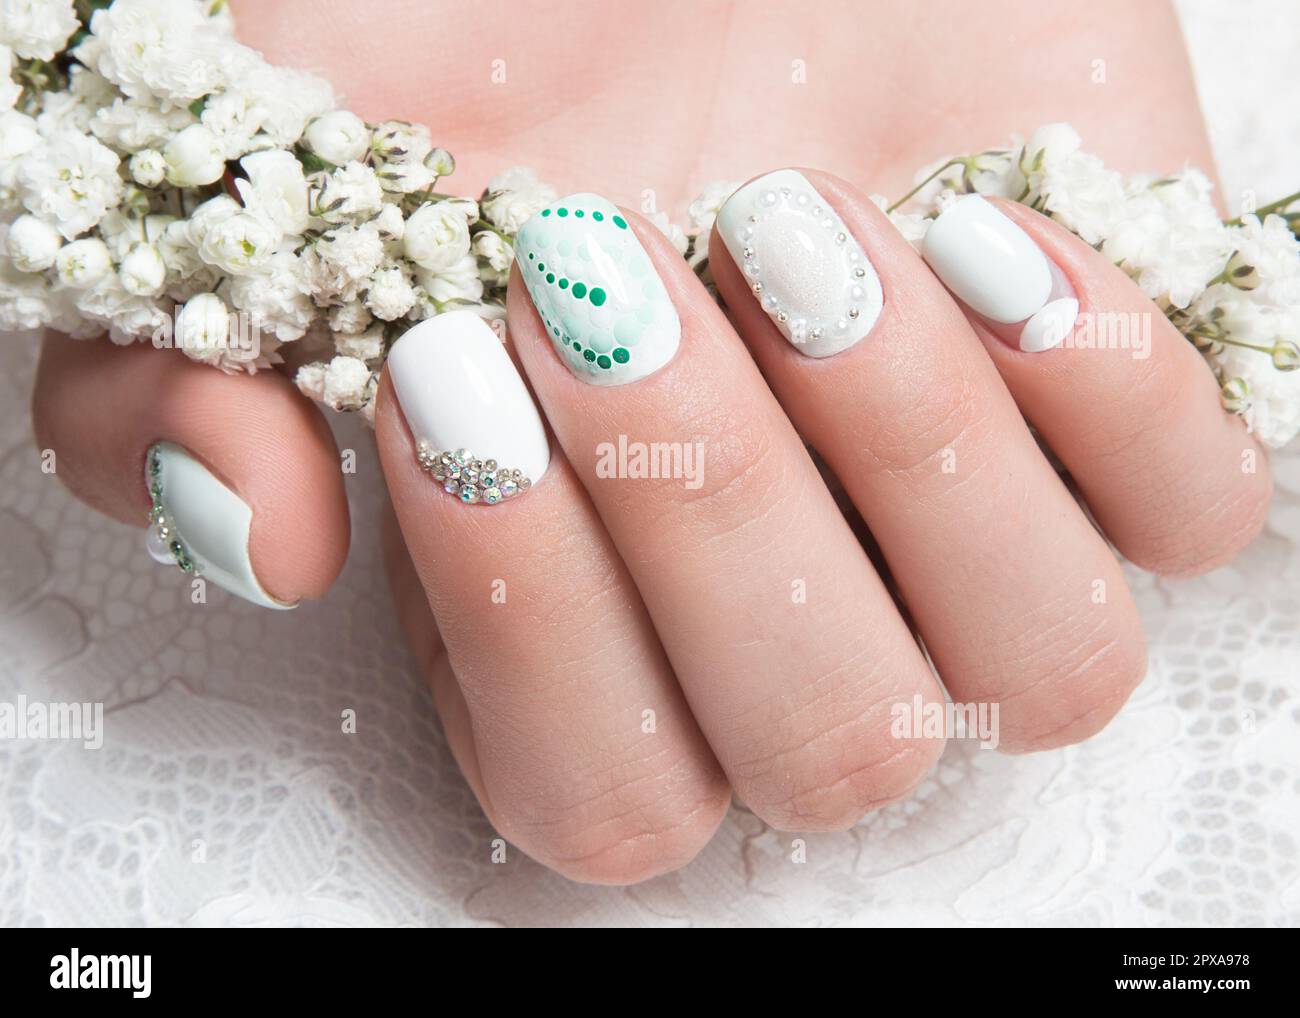 Glamorous Wedding Nail Art Designs – The Nailbox – The Nailbox